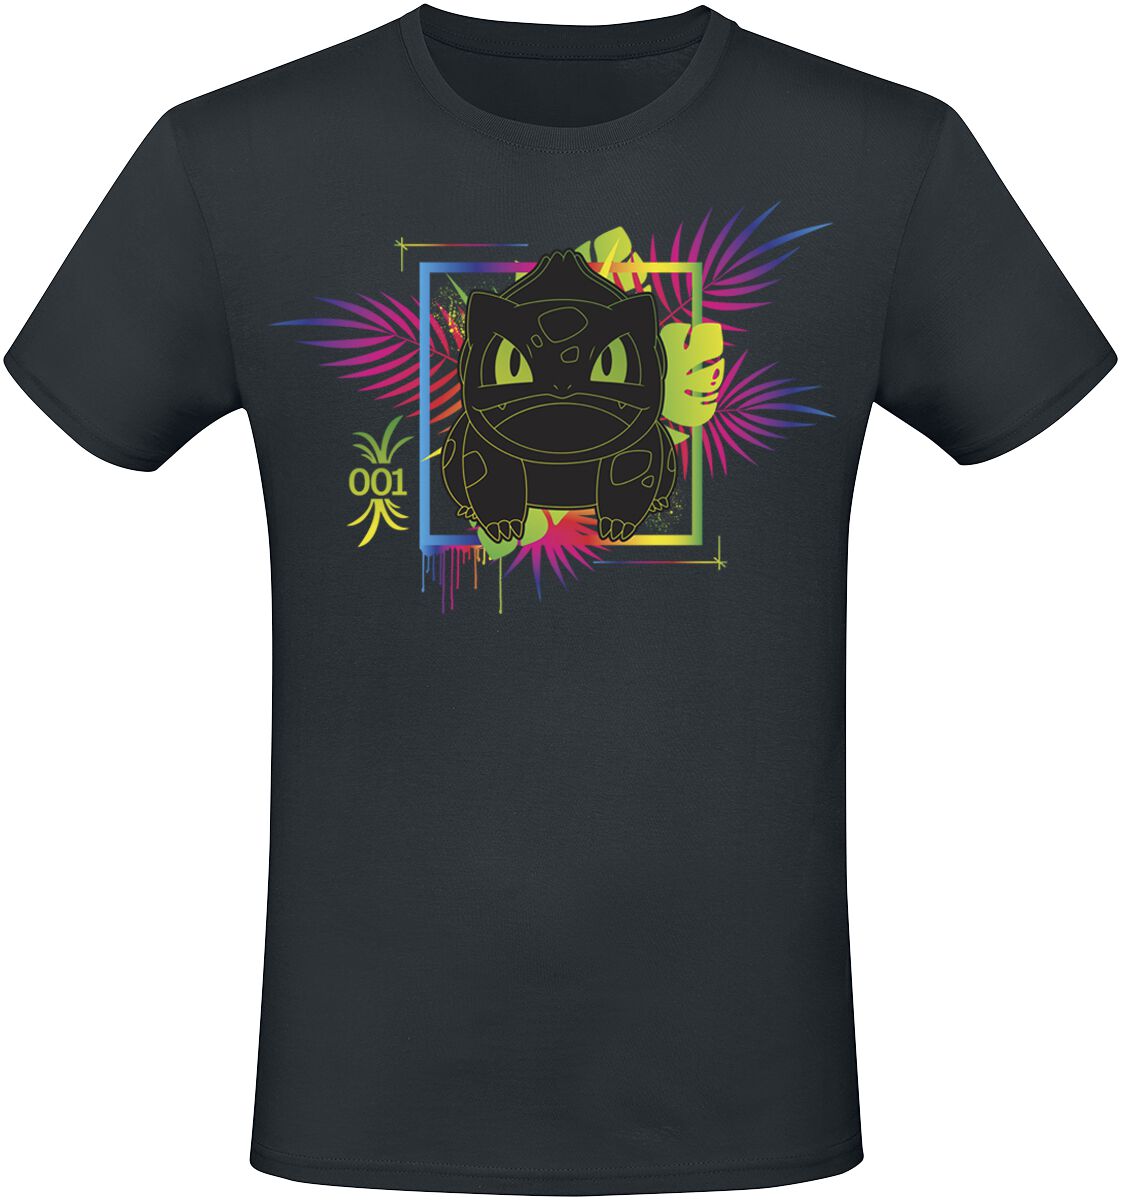 Pokémon - Gaming T-Shirt - Bisasam - Regenbogen - S - für Männer - Größe S - schwarz  - EMP exklusives Merchandise!